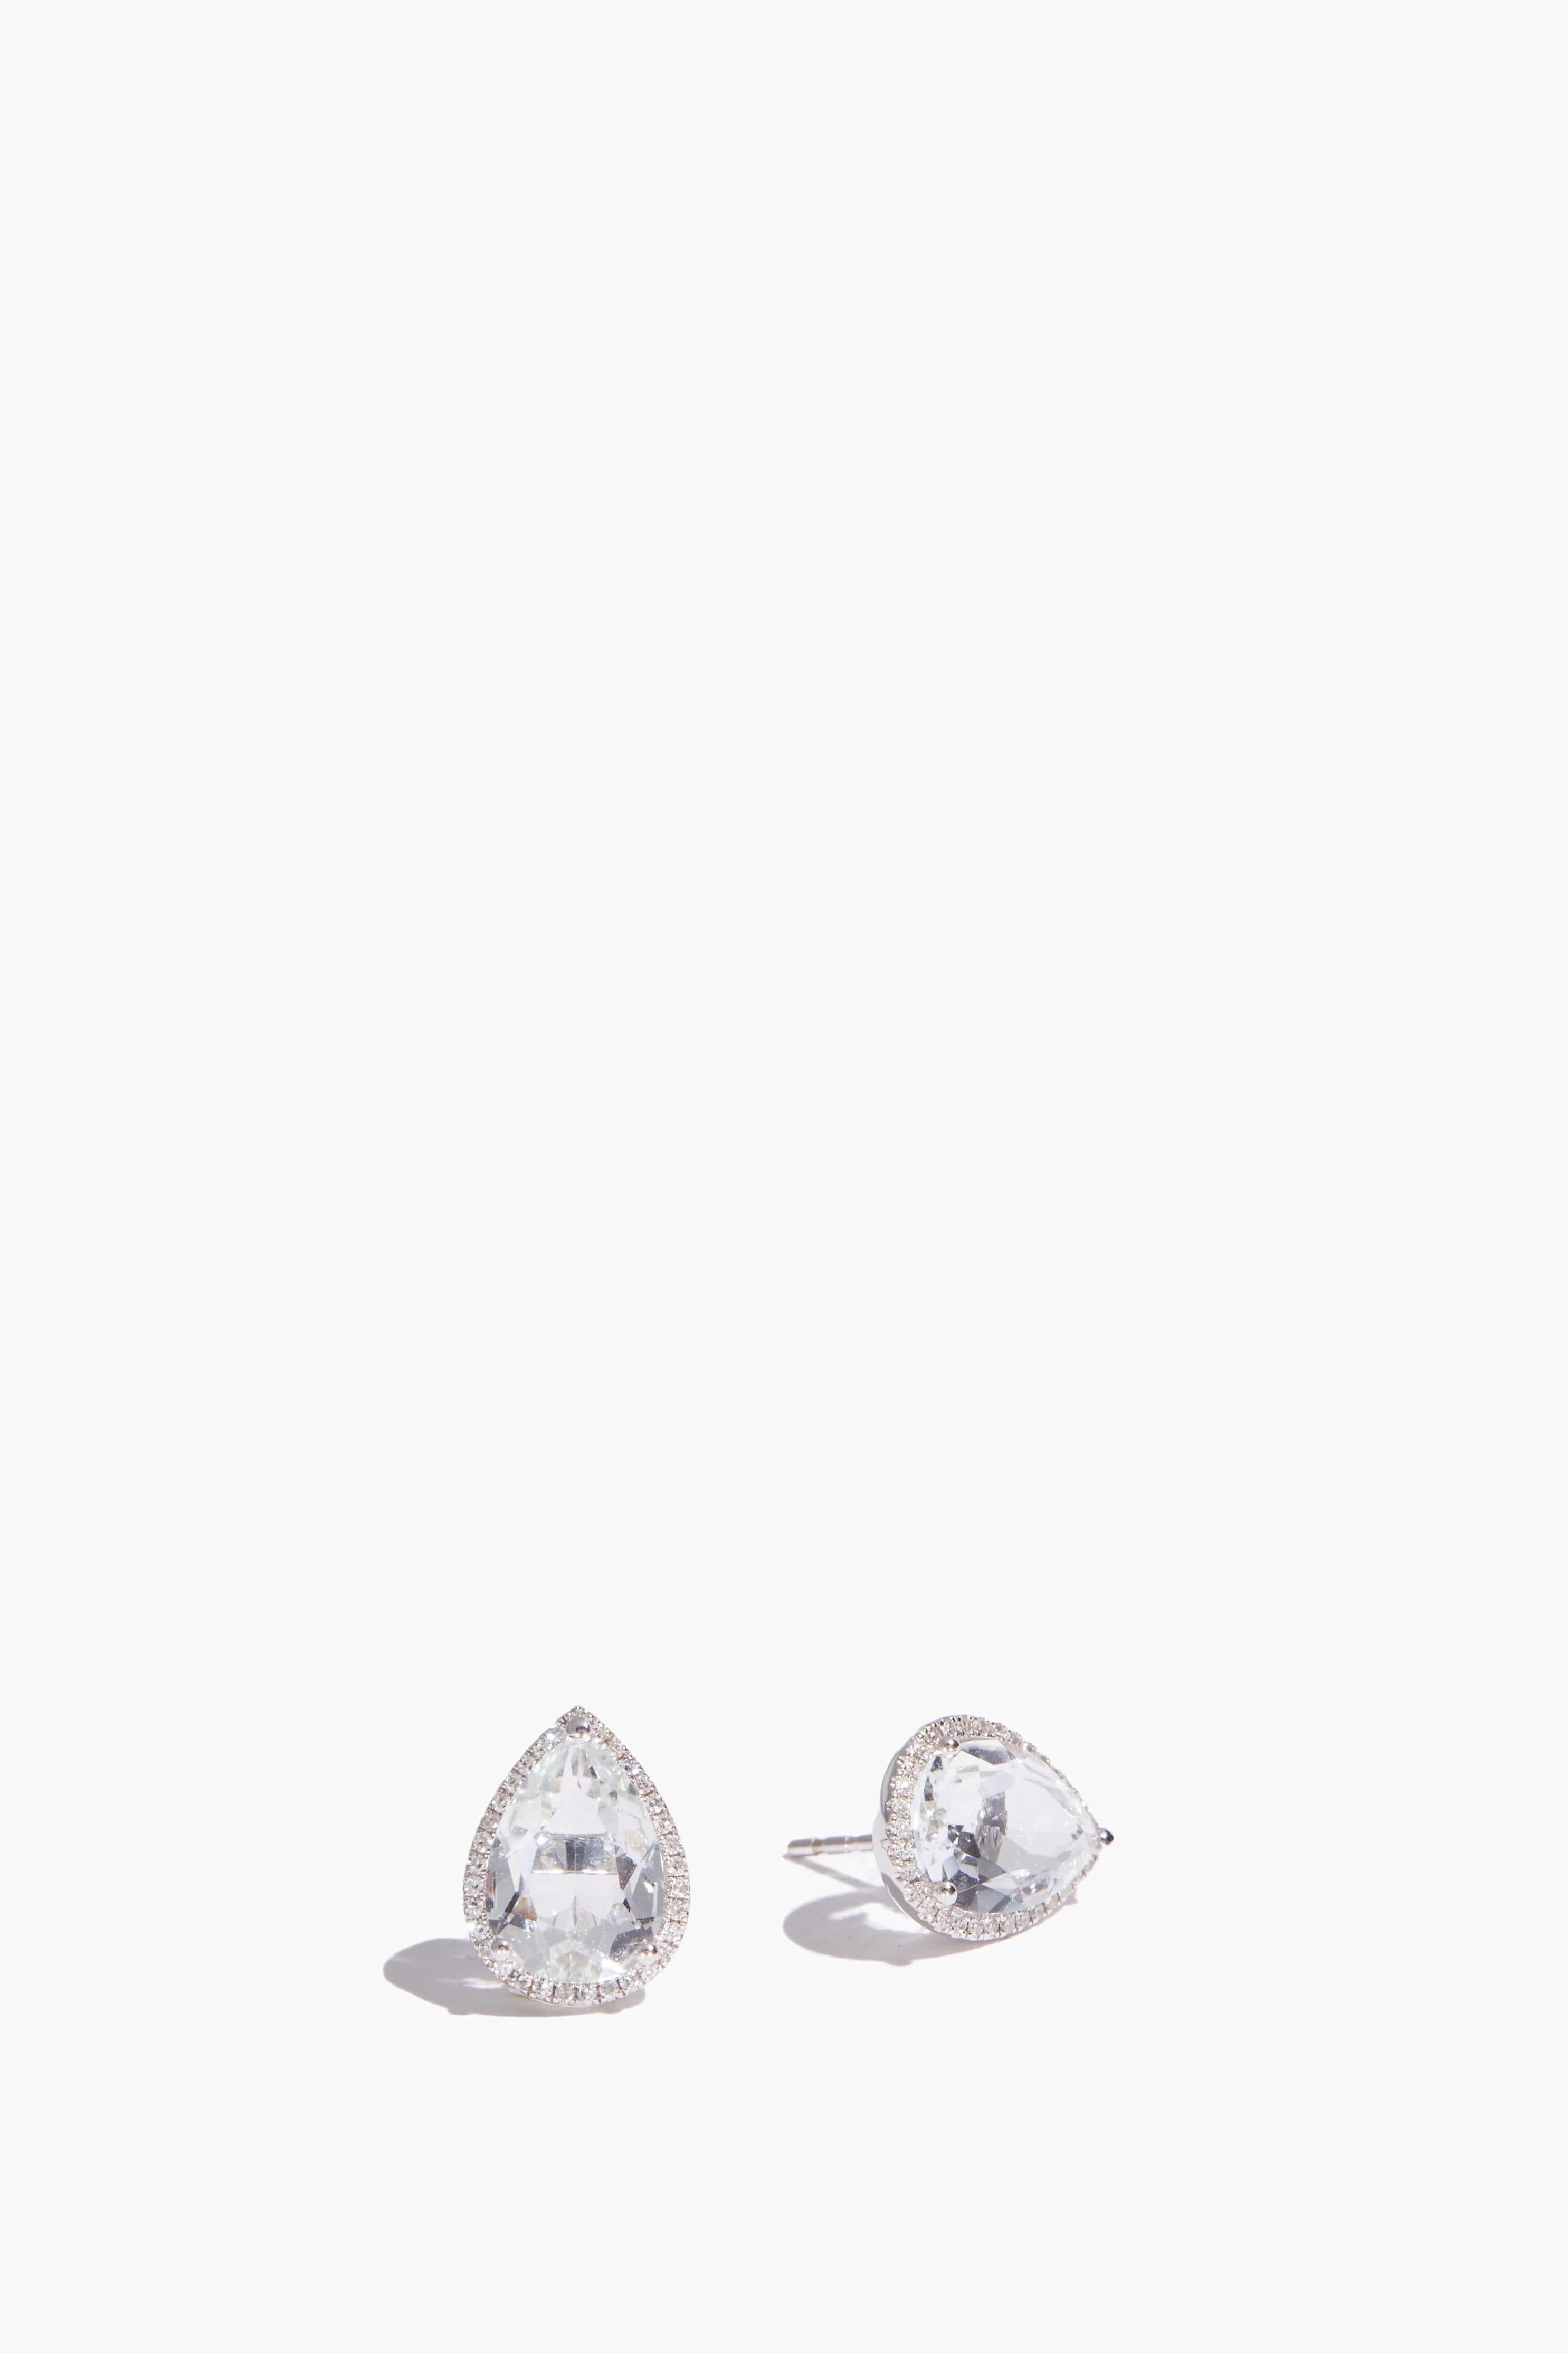 Samira 13 Earrings Pear Topaz Diamond Stud Earring in 18k White Gold